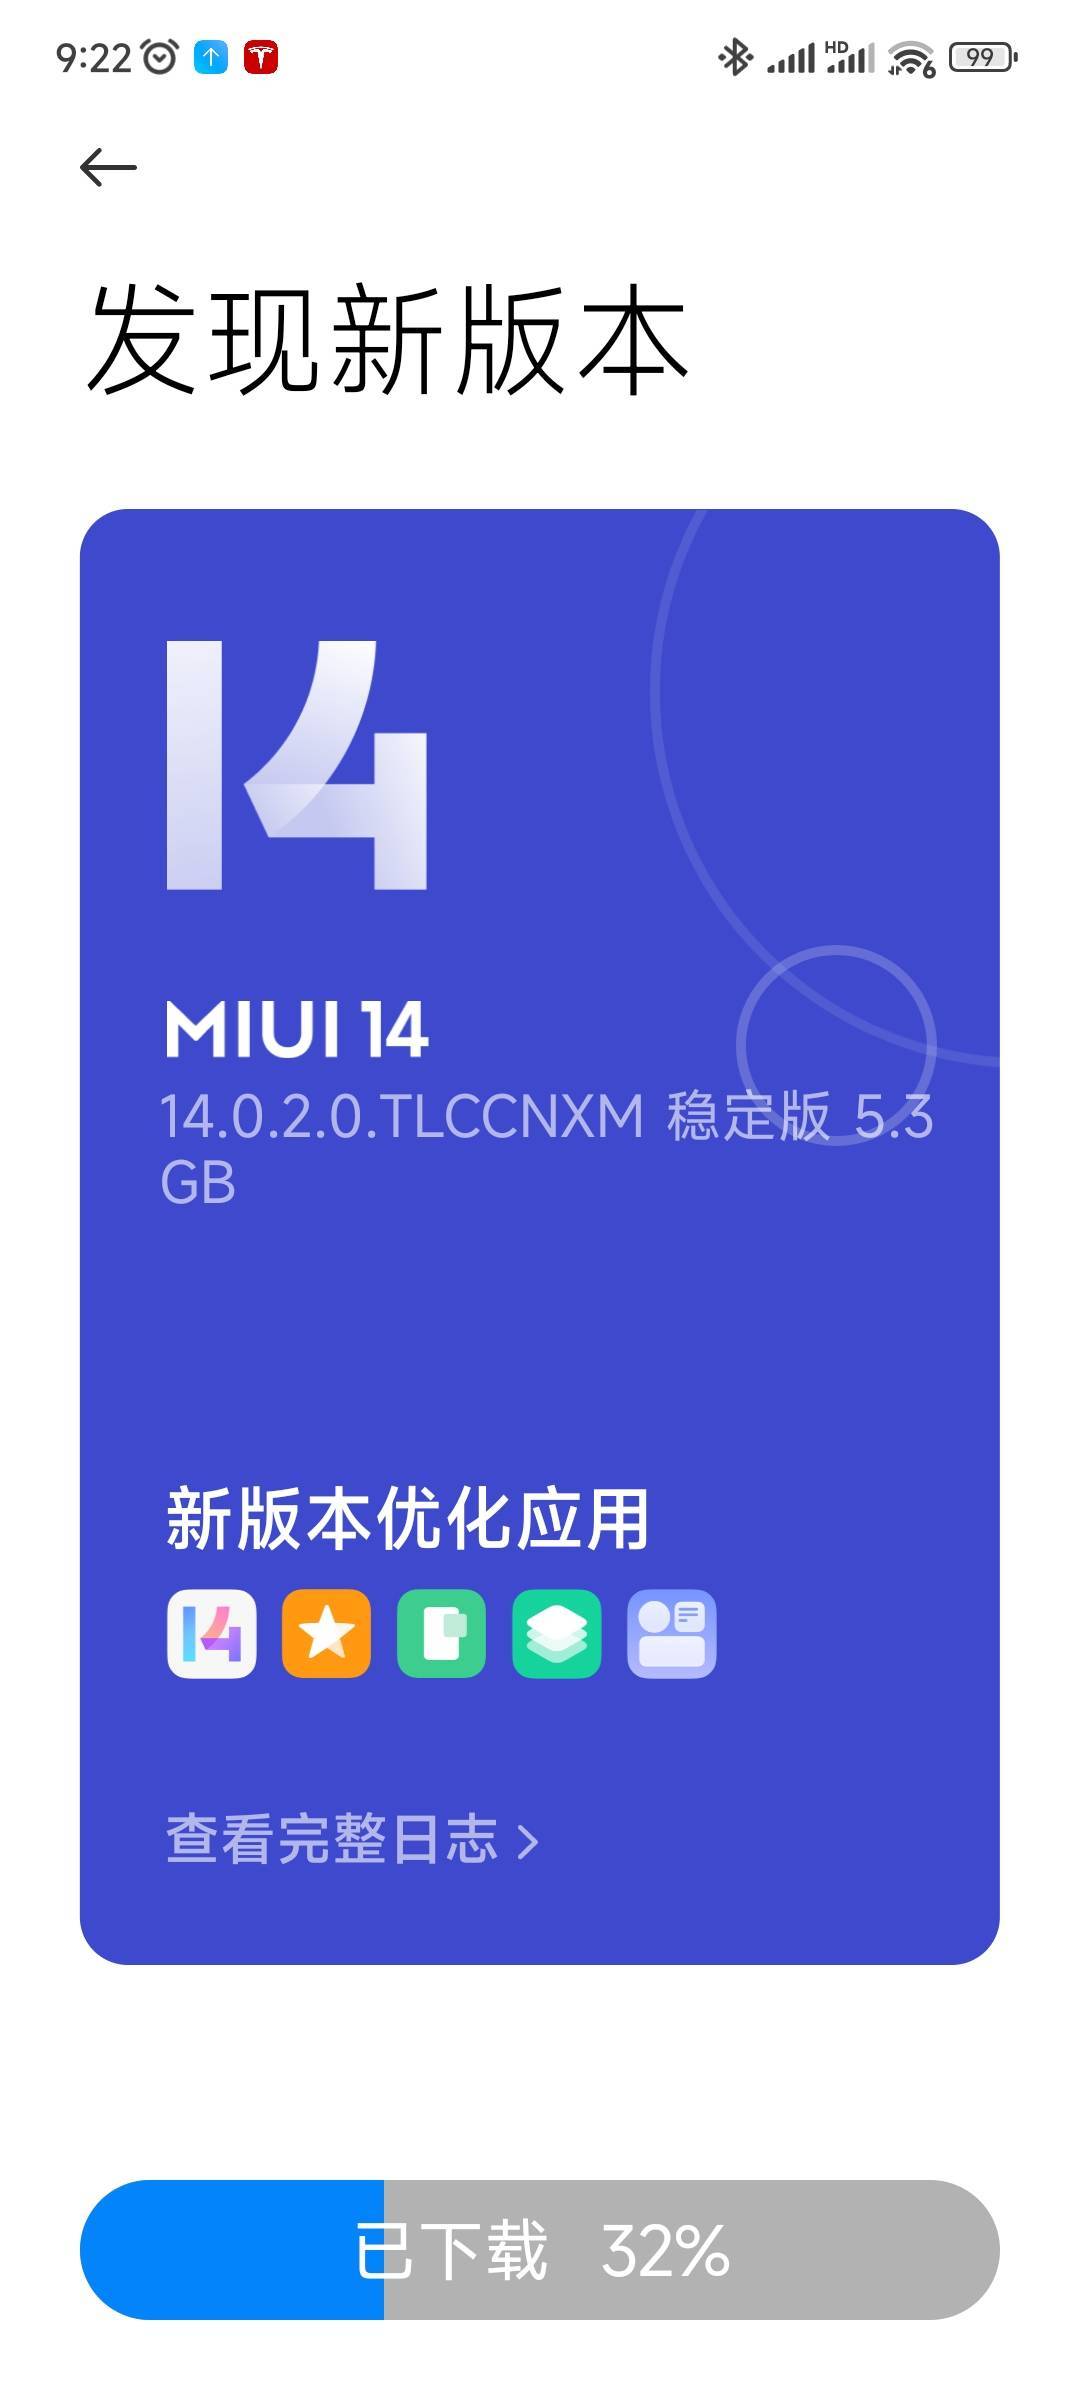 华为手机固件升级包
:MIUI14更新来了！小米12抢先升级，固件容量高达5.3GB